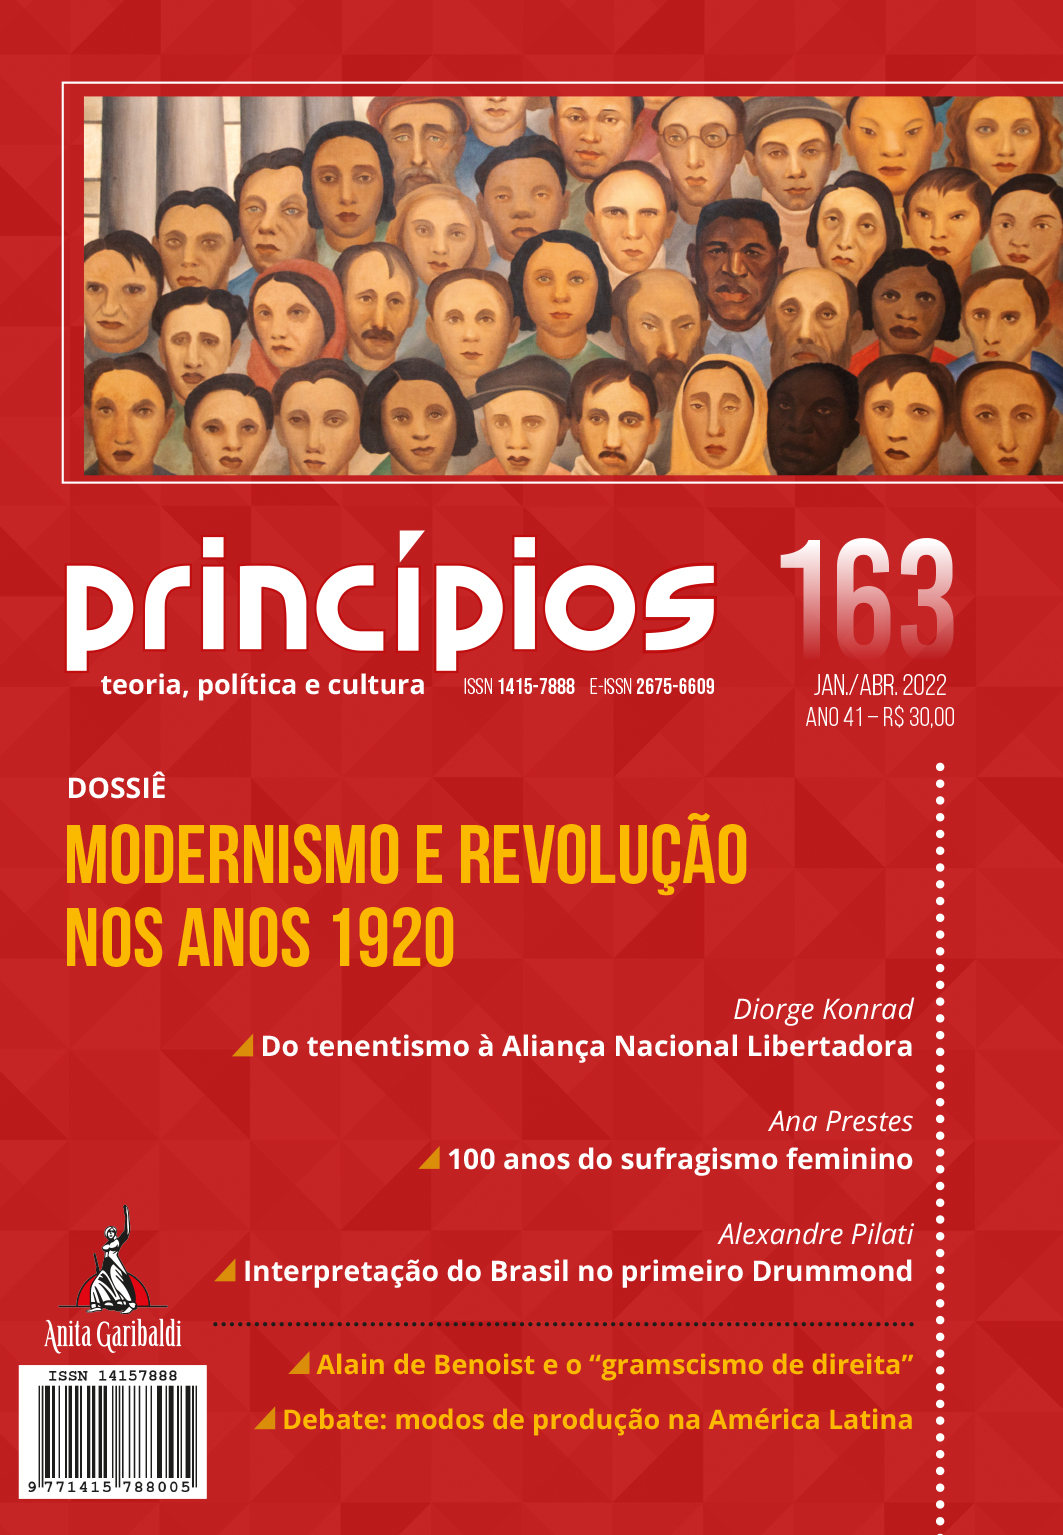 Princípios nº 163 – Jan./Abr. 2022.Modernismo e revolução nos anos 1920.